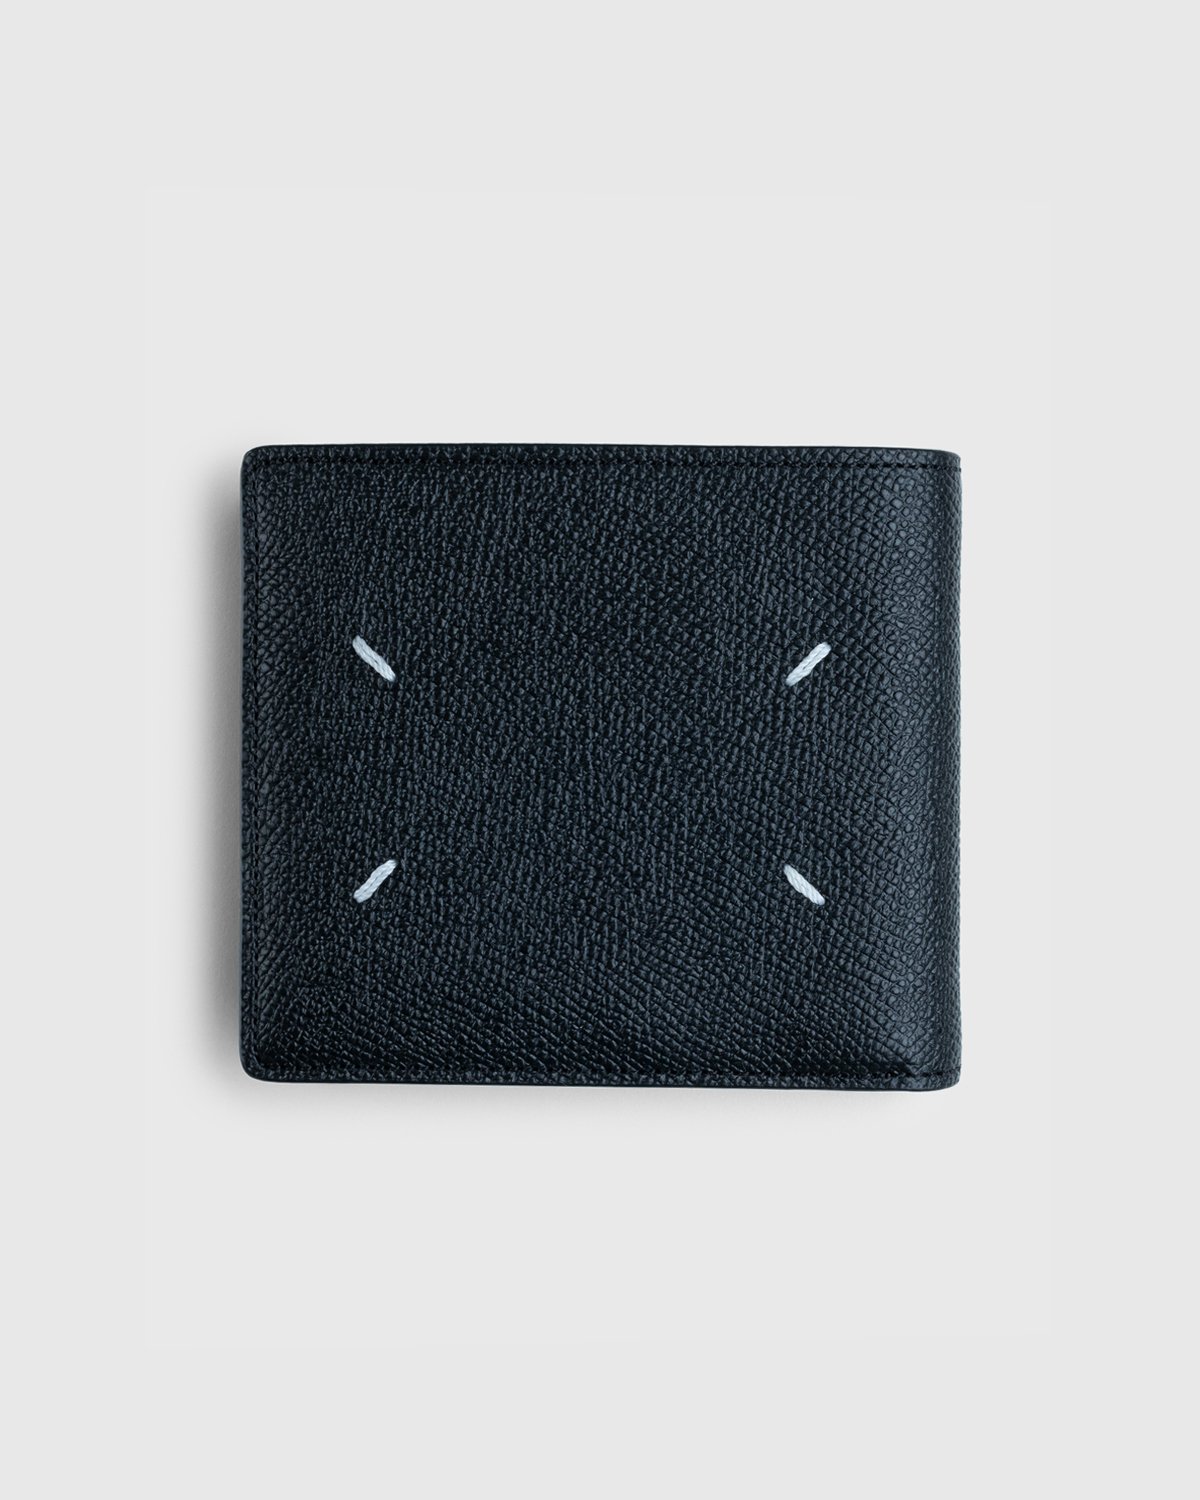 Maison Margiela - Leather Wallet Black - Accessories - Black - Image 1